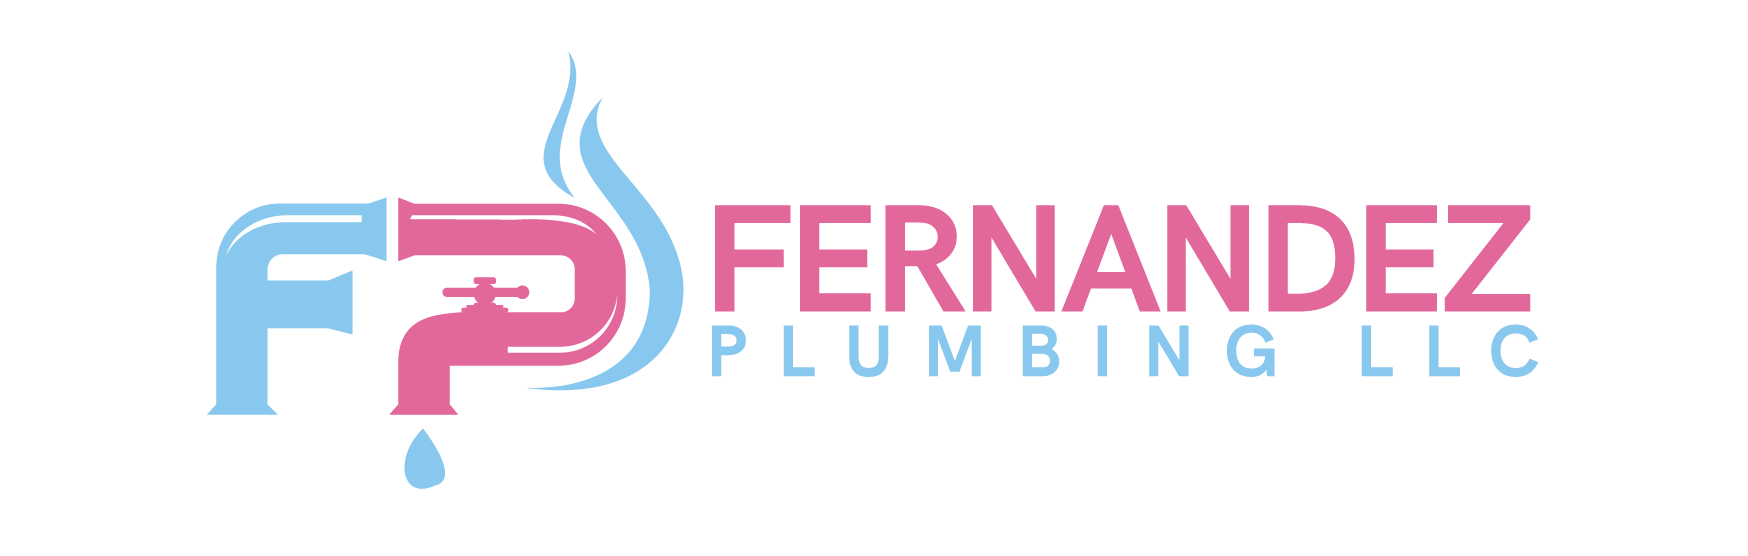 Fernandez Plumbing